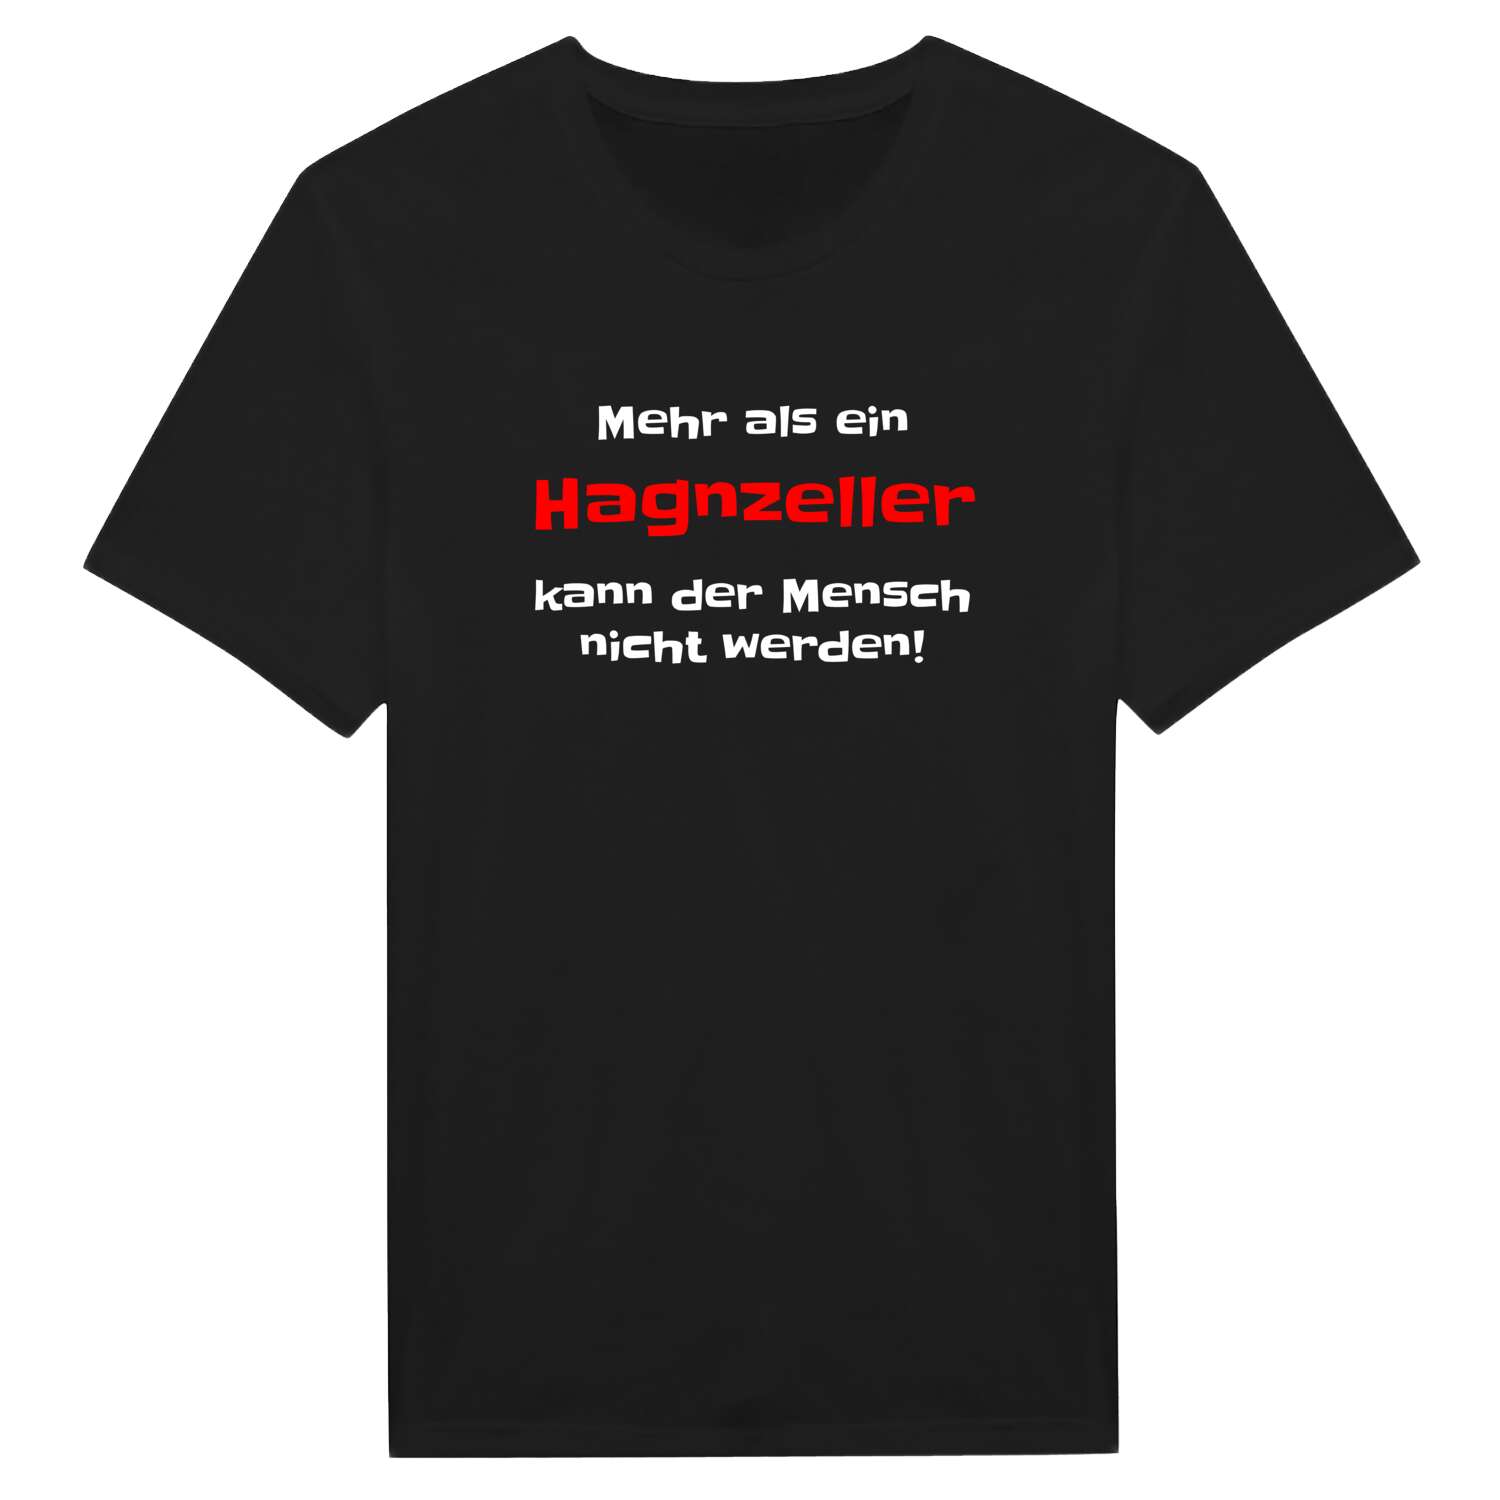 Hagnzell T-Shirt »Mehr als ein«